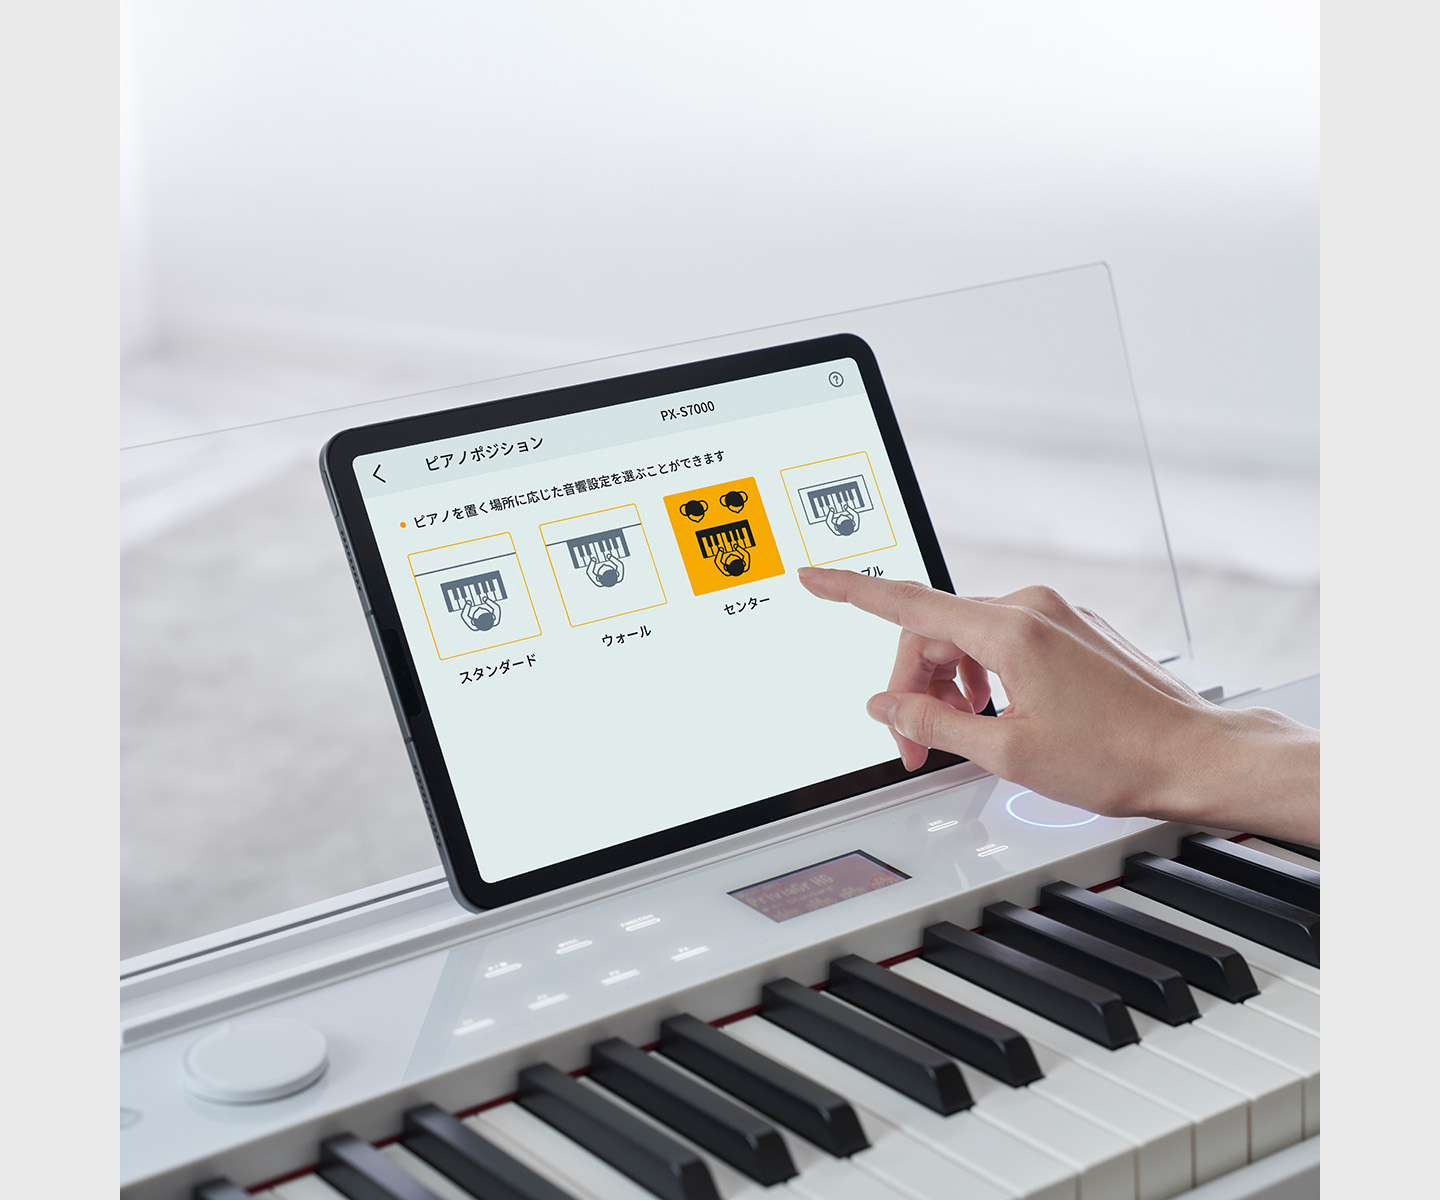  専用アプリを使ってピアノの設定や機能を自由にカスタマイズ